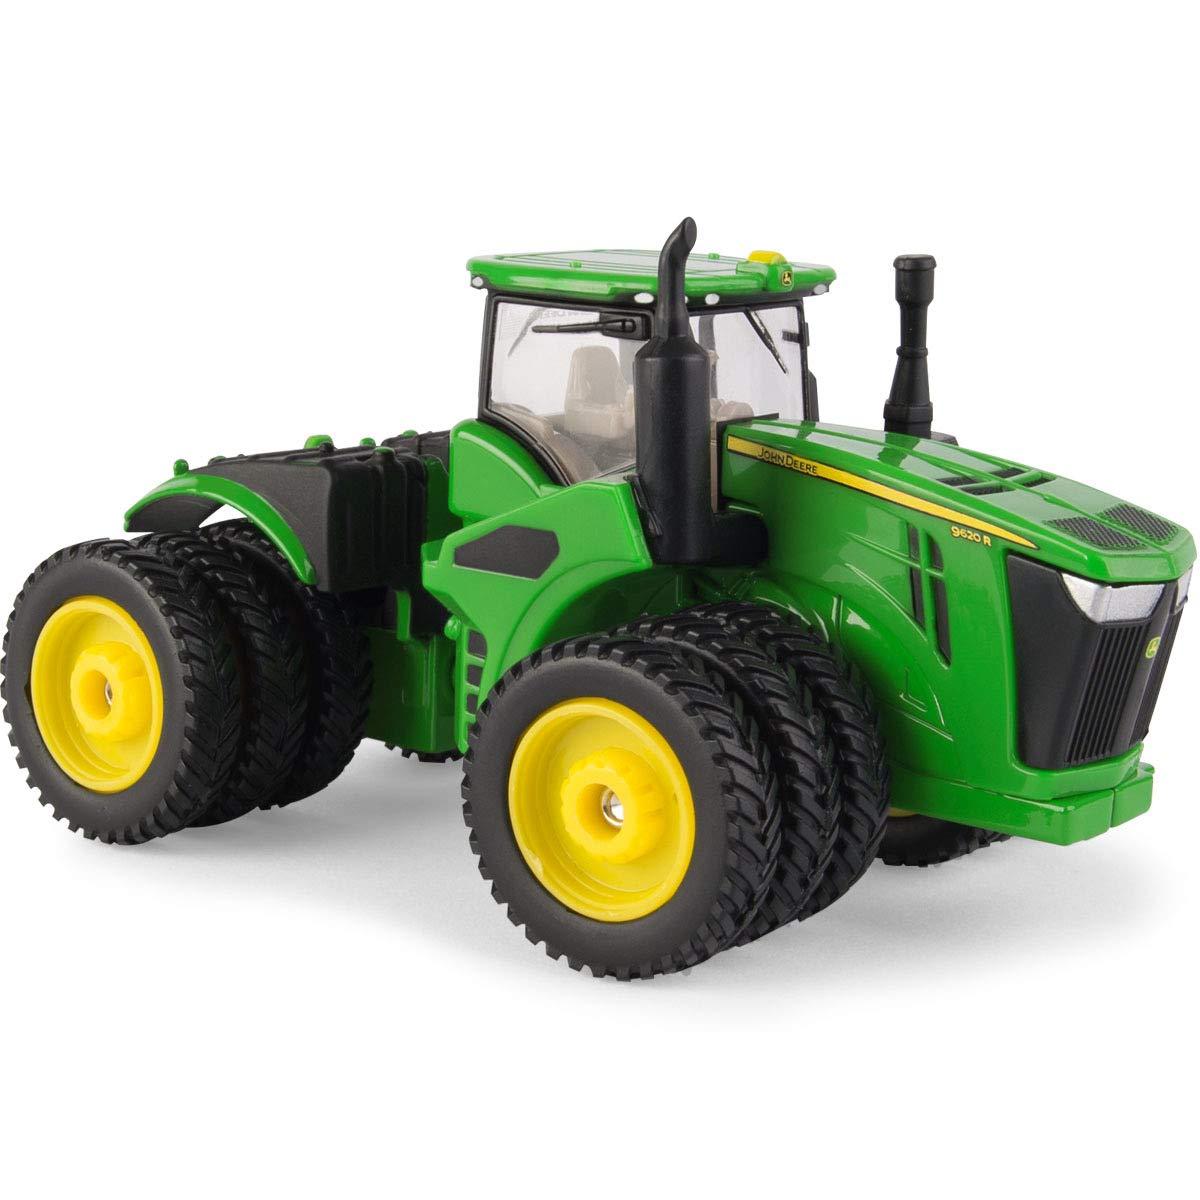 1/64 John Deere 9620R Tractor Toy - LP70607